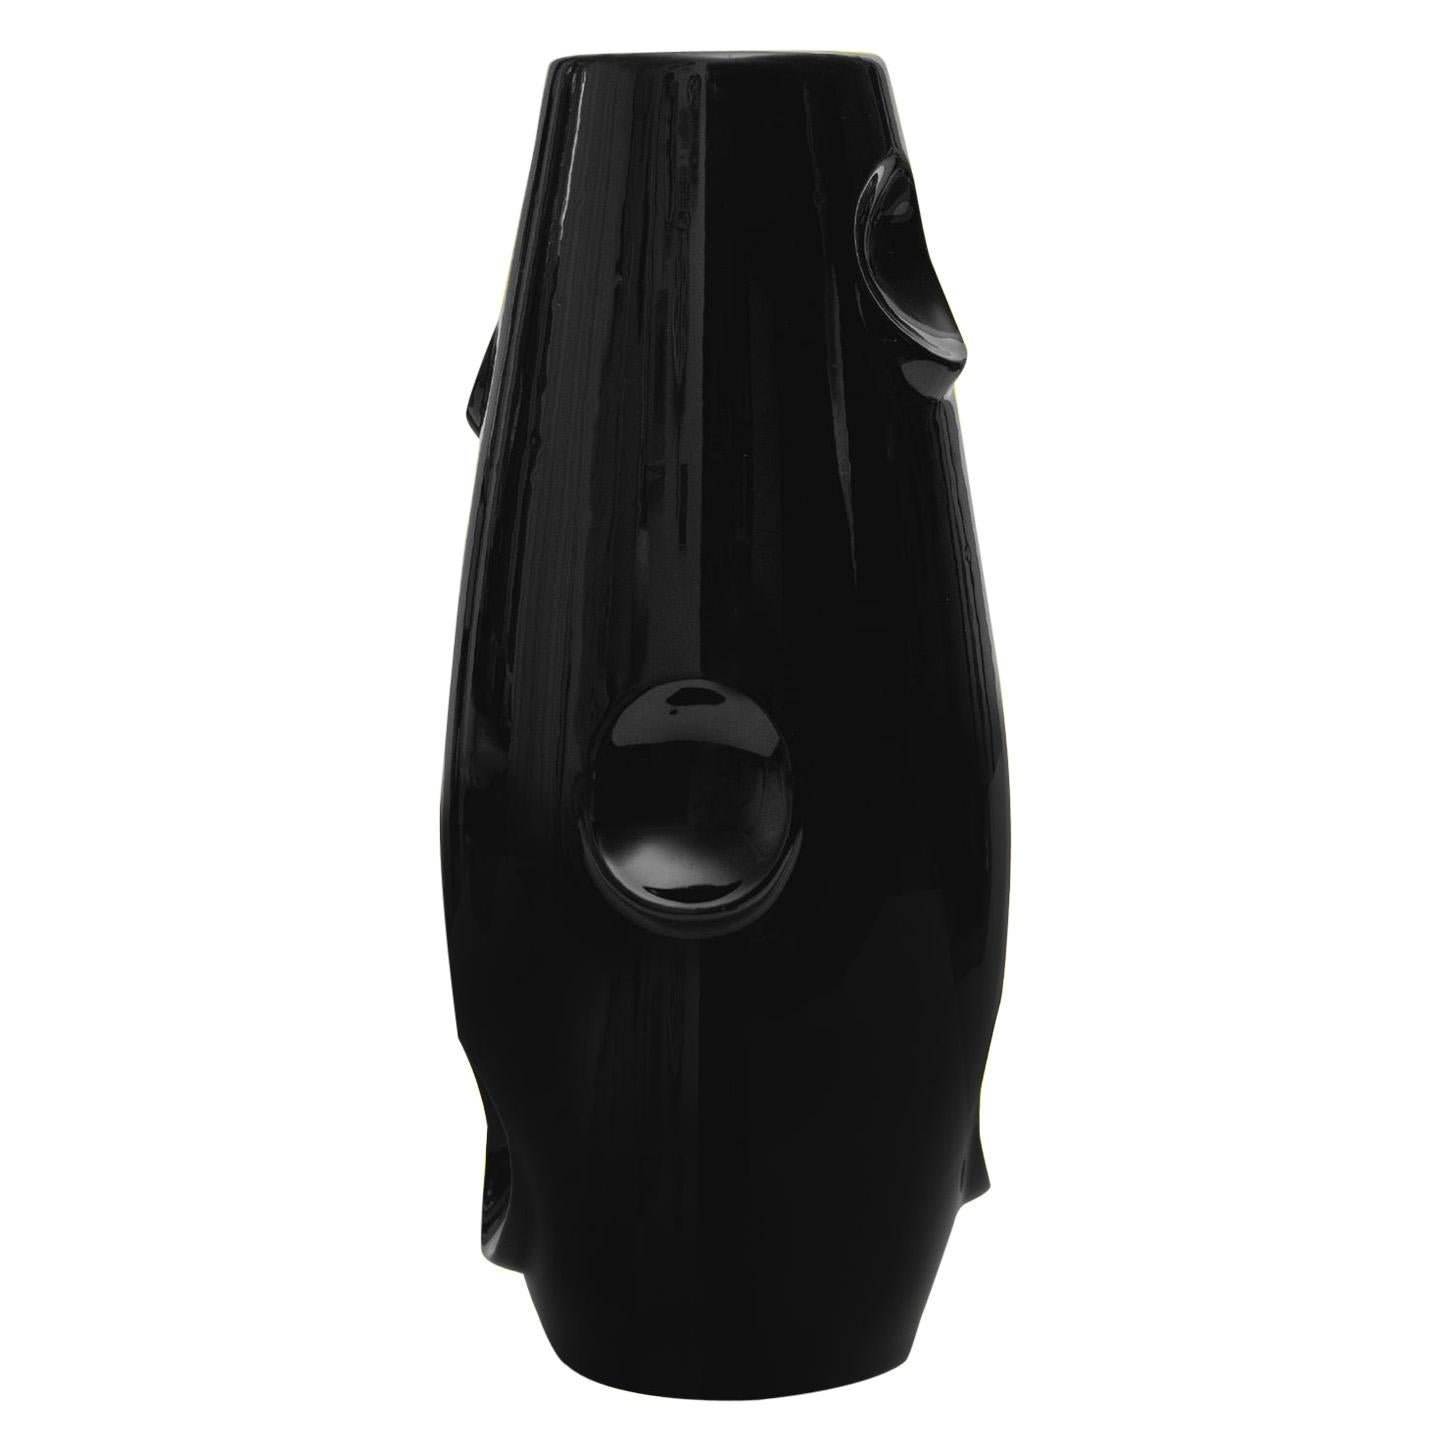 OKO Black Ceramic Vase by Malwina Konopacka For Sale